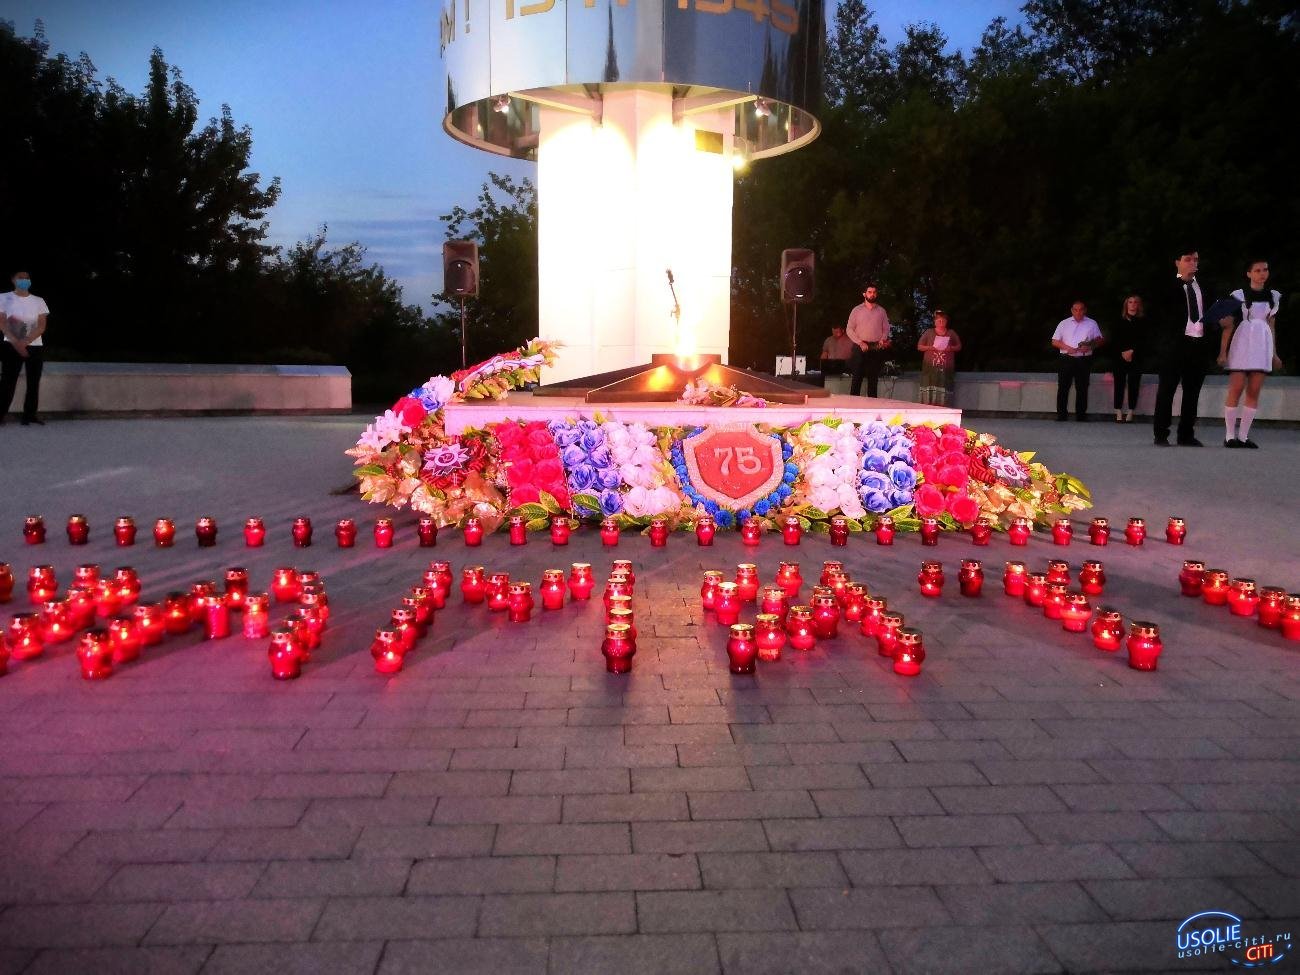 Имя погибшего в Белоруссии Васина Степана отсутствует в Усолье на мемориале Вечного огня